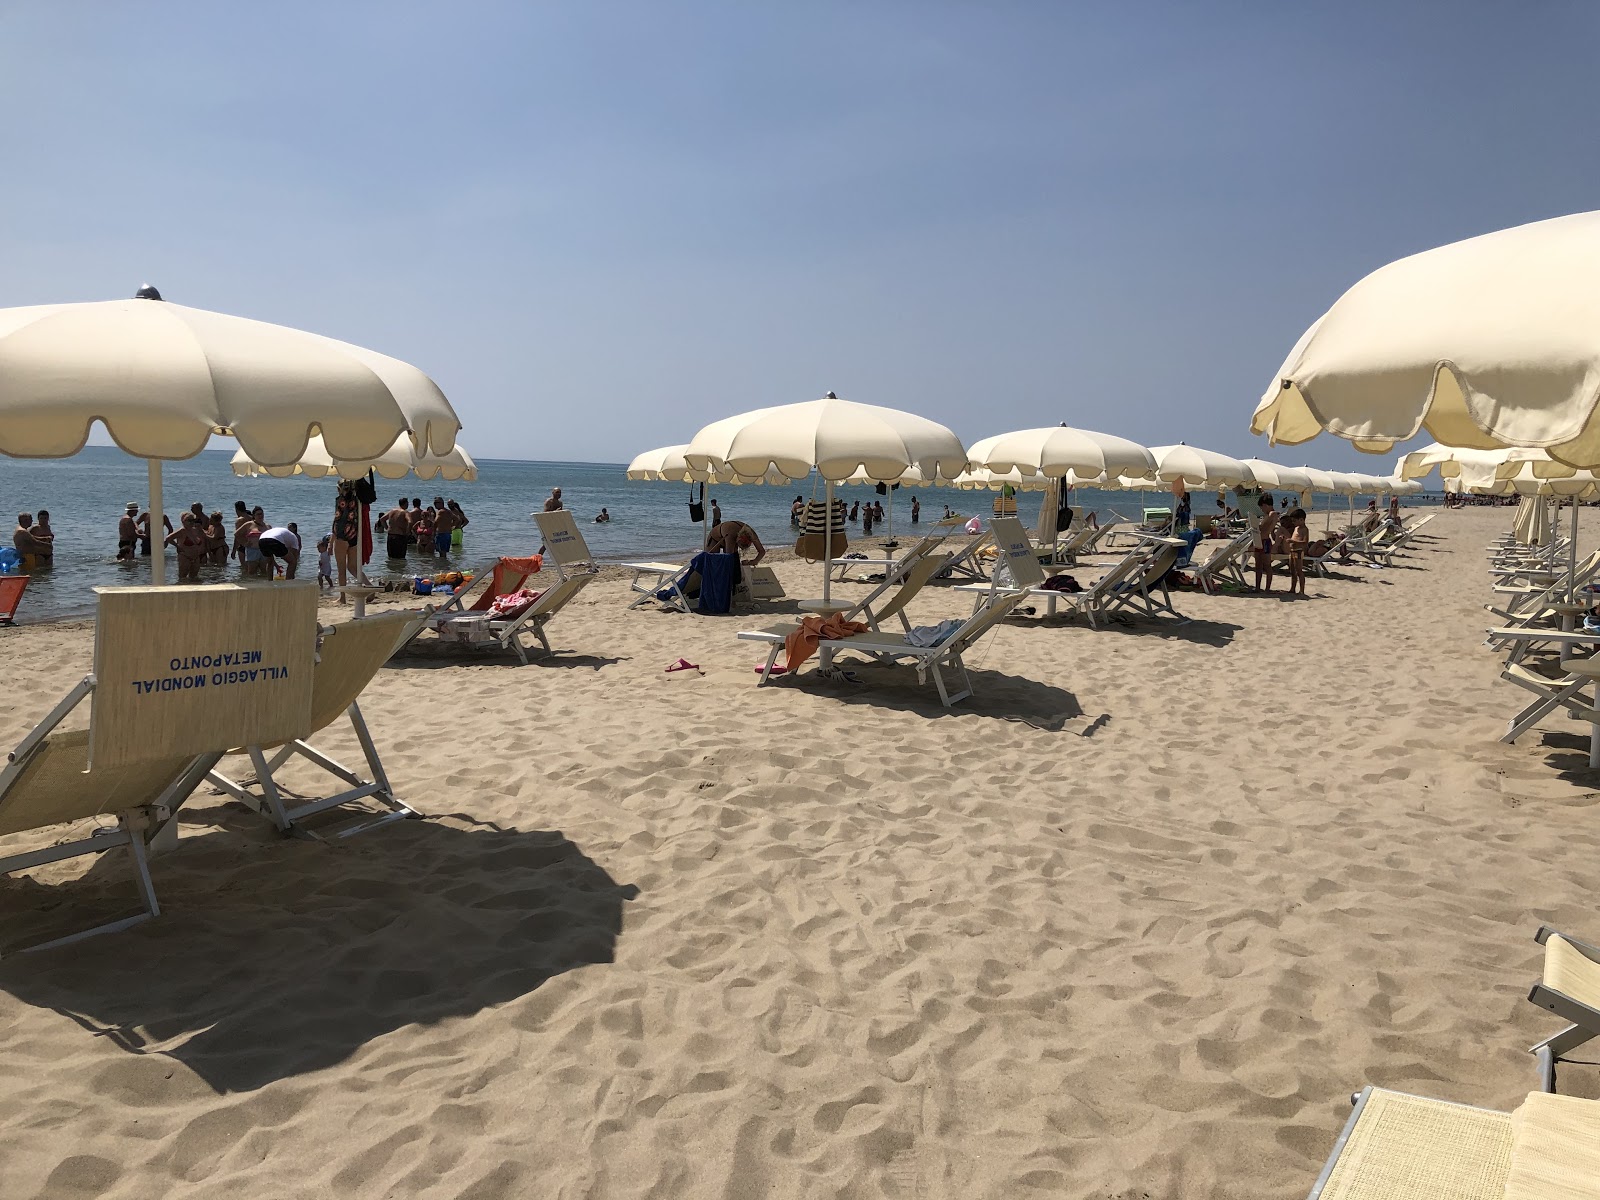 Metaponto Lido beach II'in fotoğrafı plaj tatil beldesi alanı